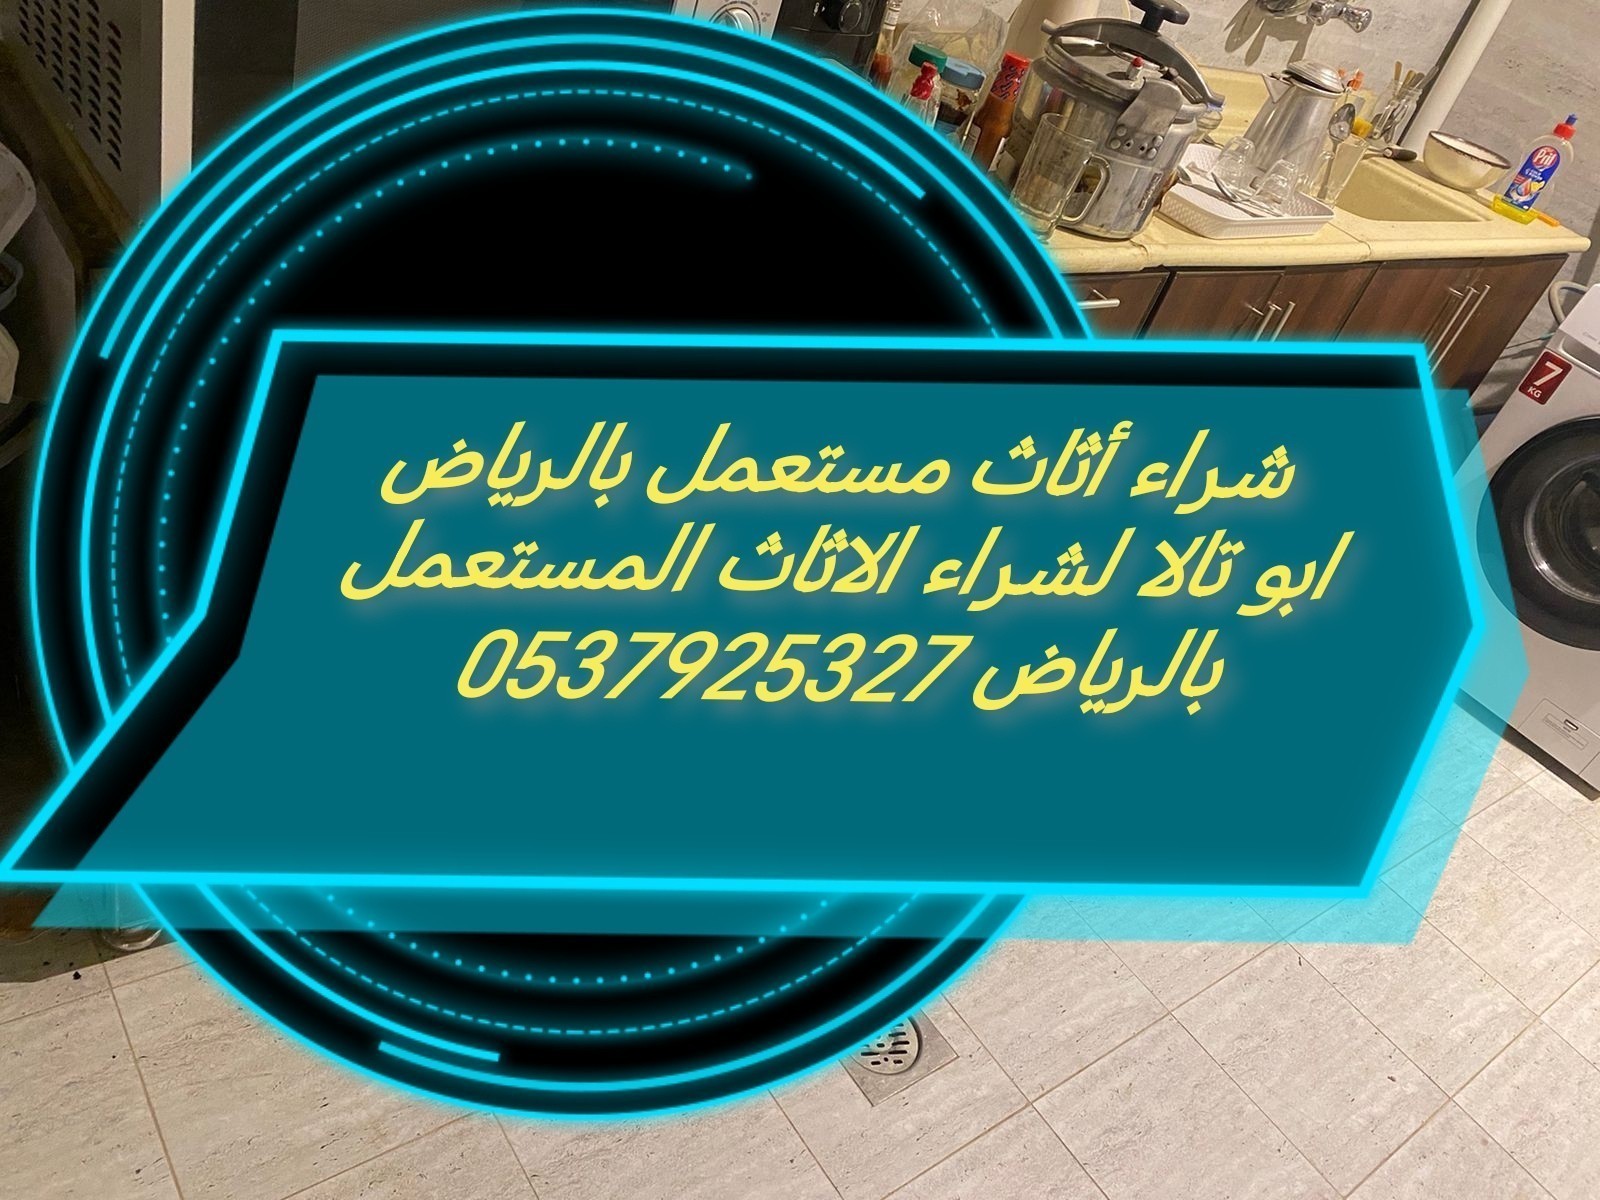 شراء أثاث مستعمل حي العريجاء 0537925327